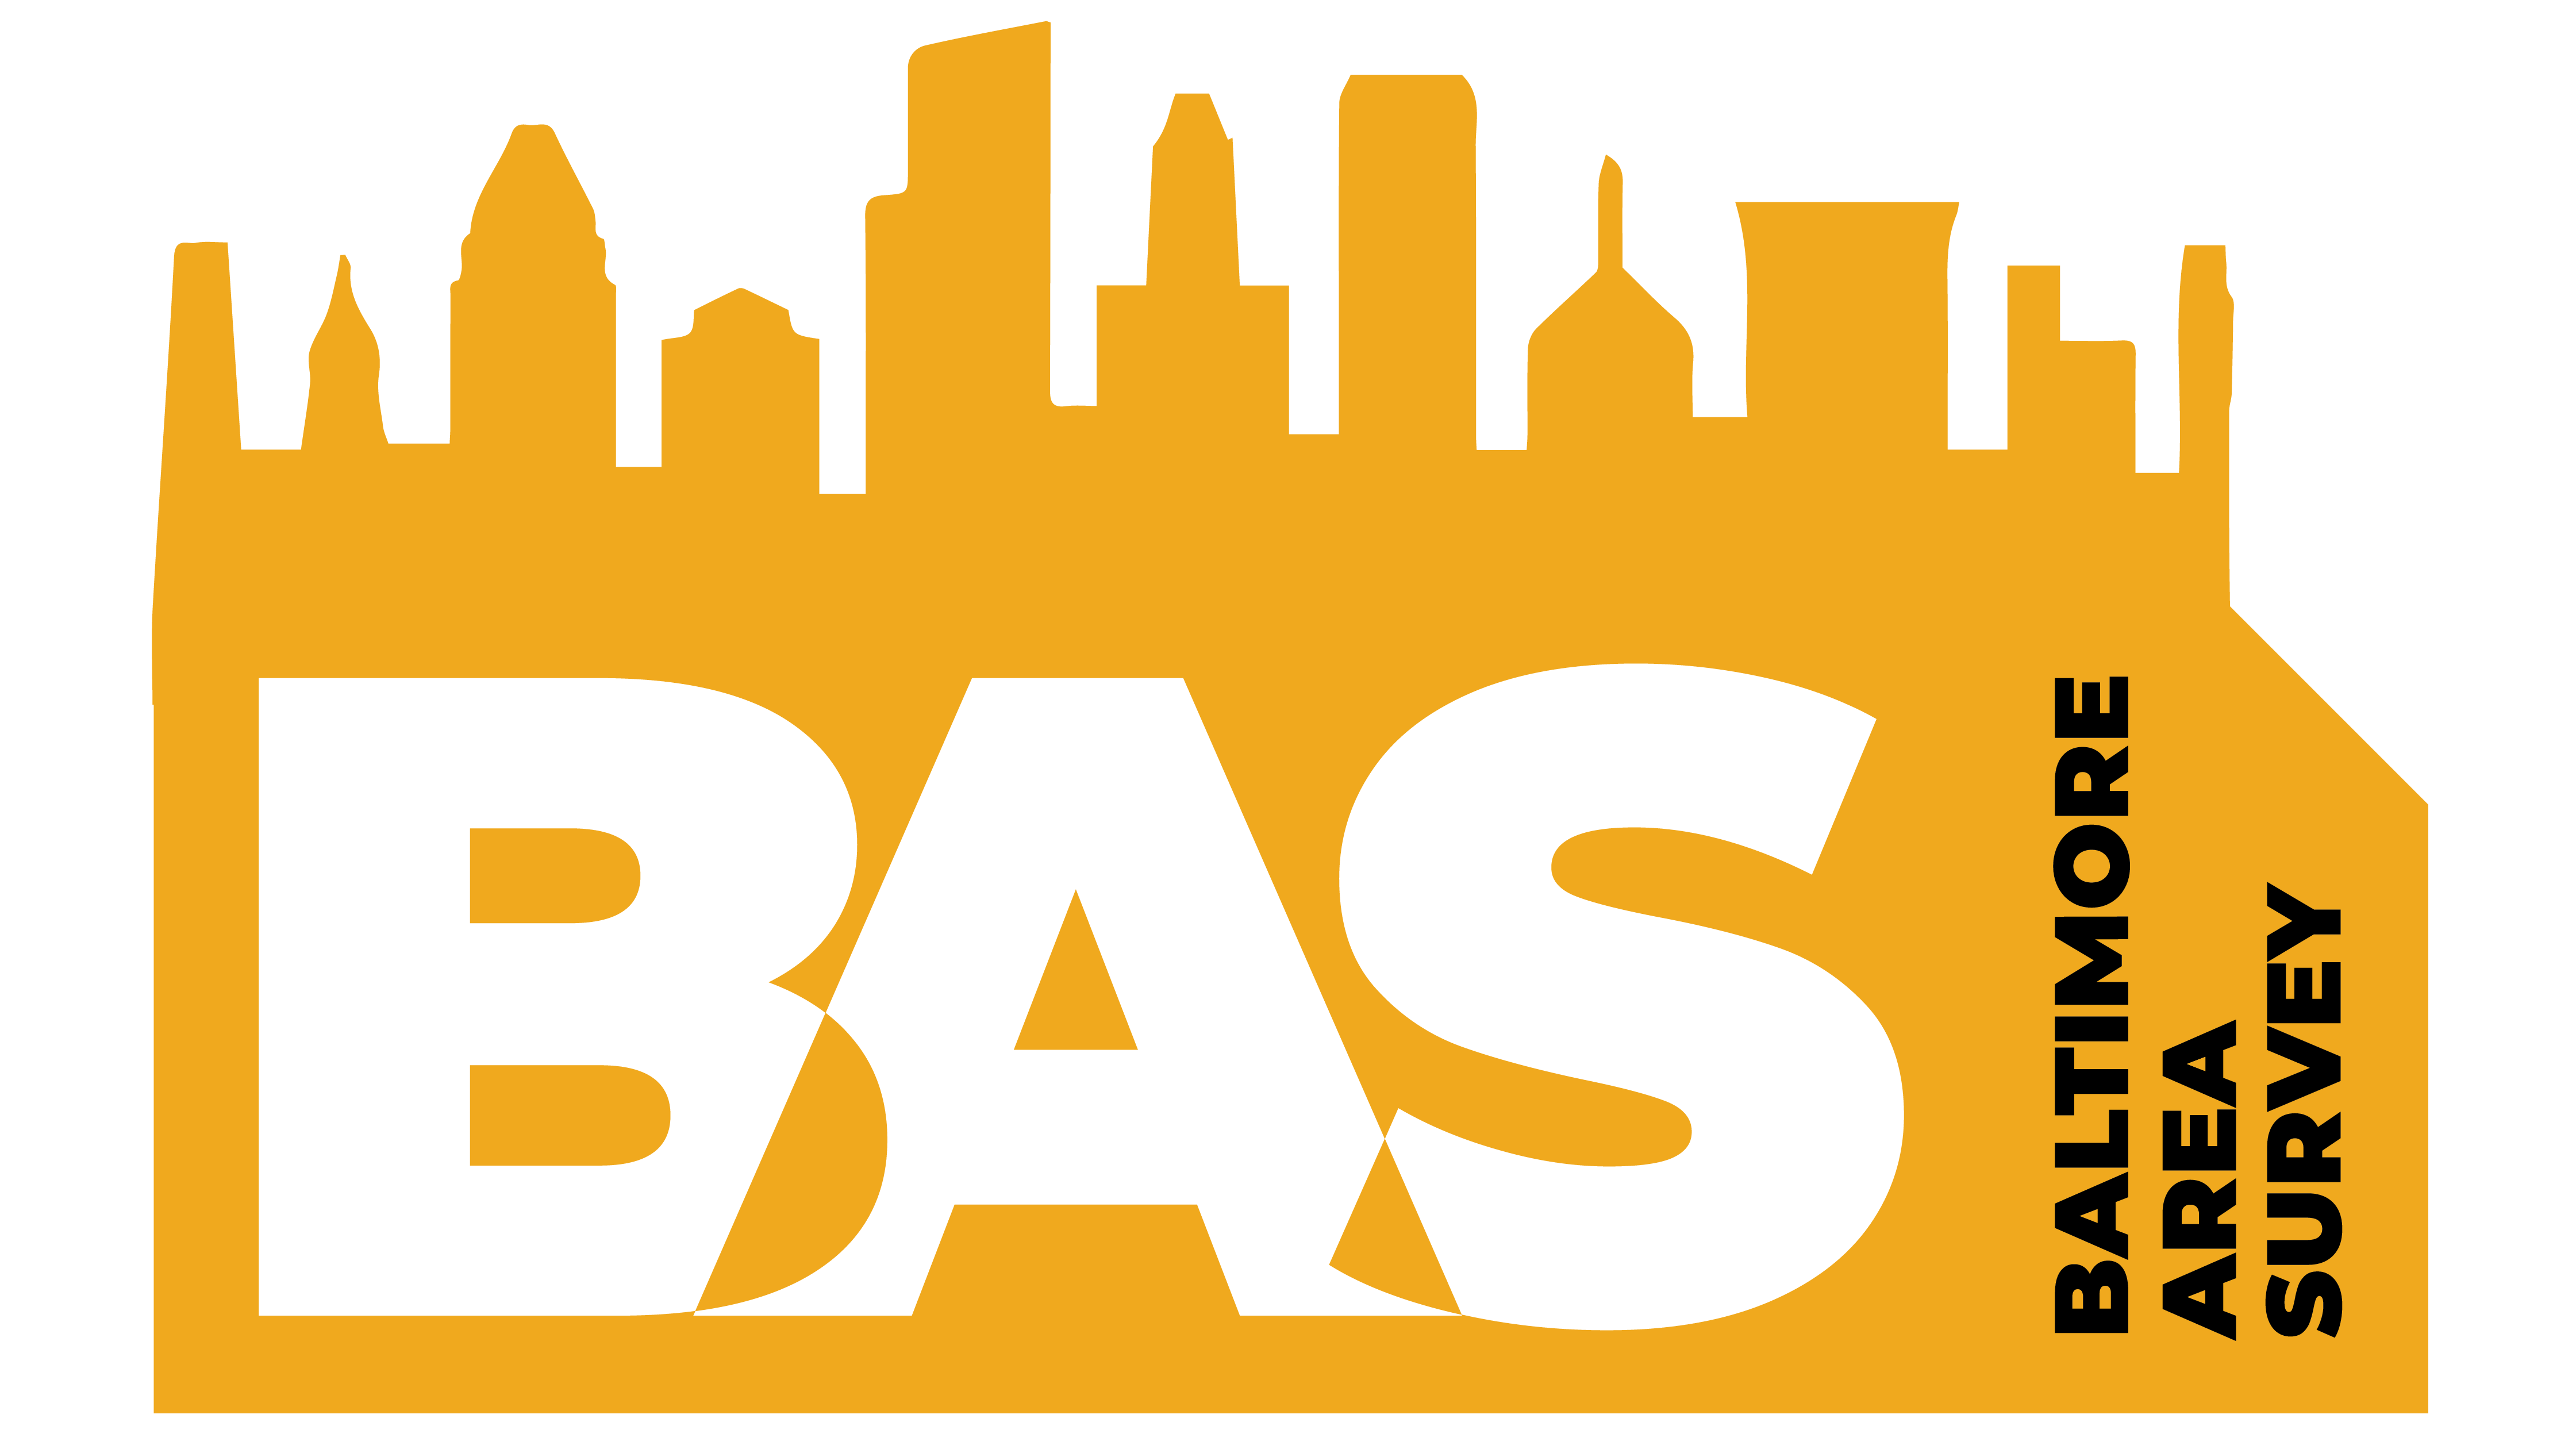 Baltimore Area Survey logo